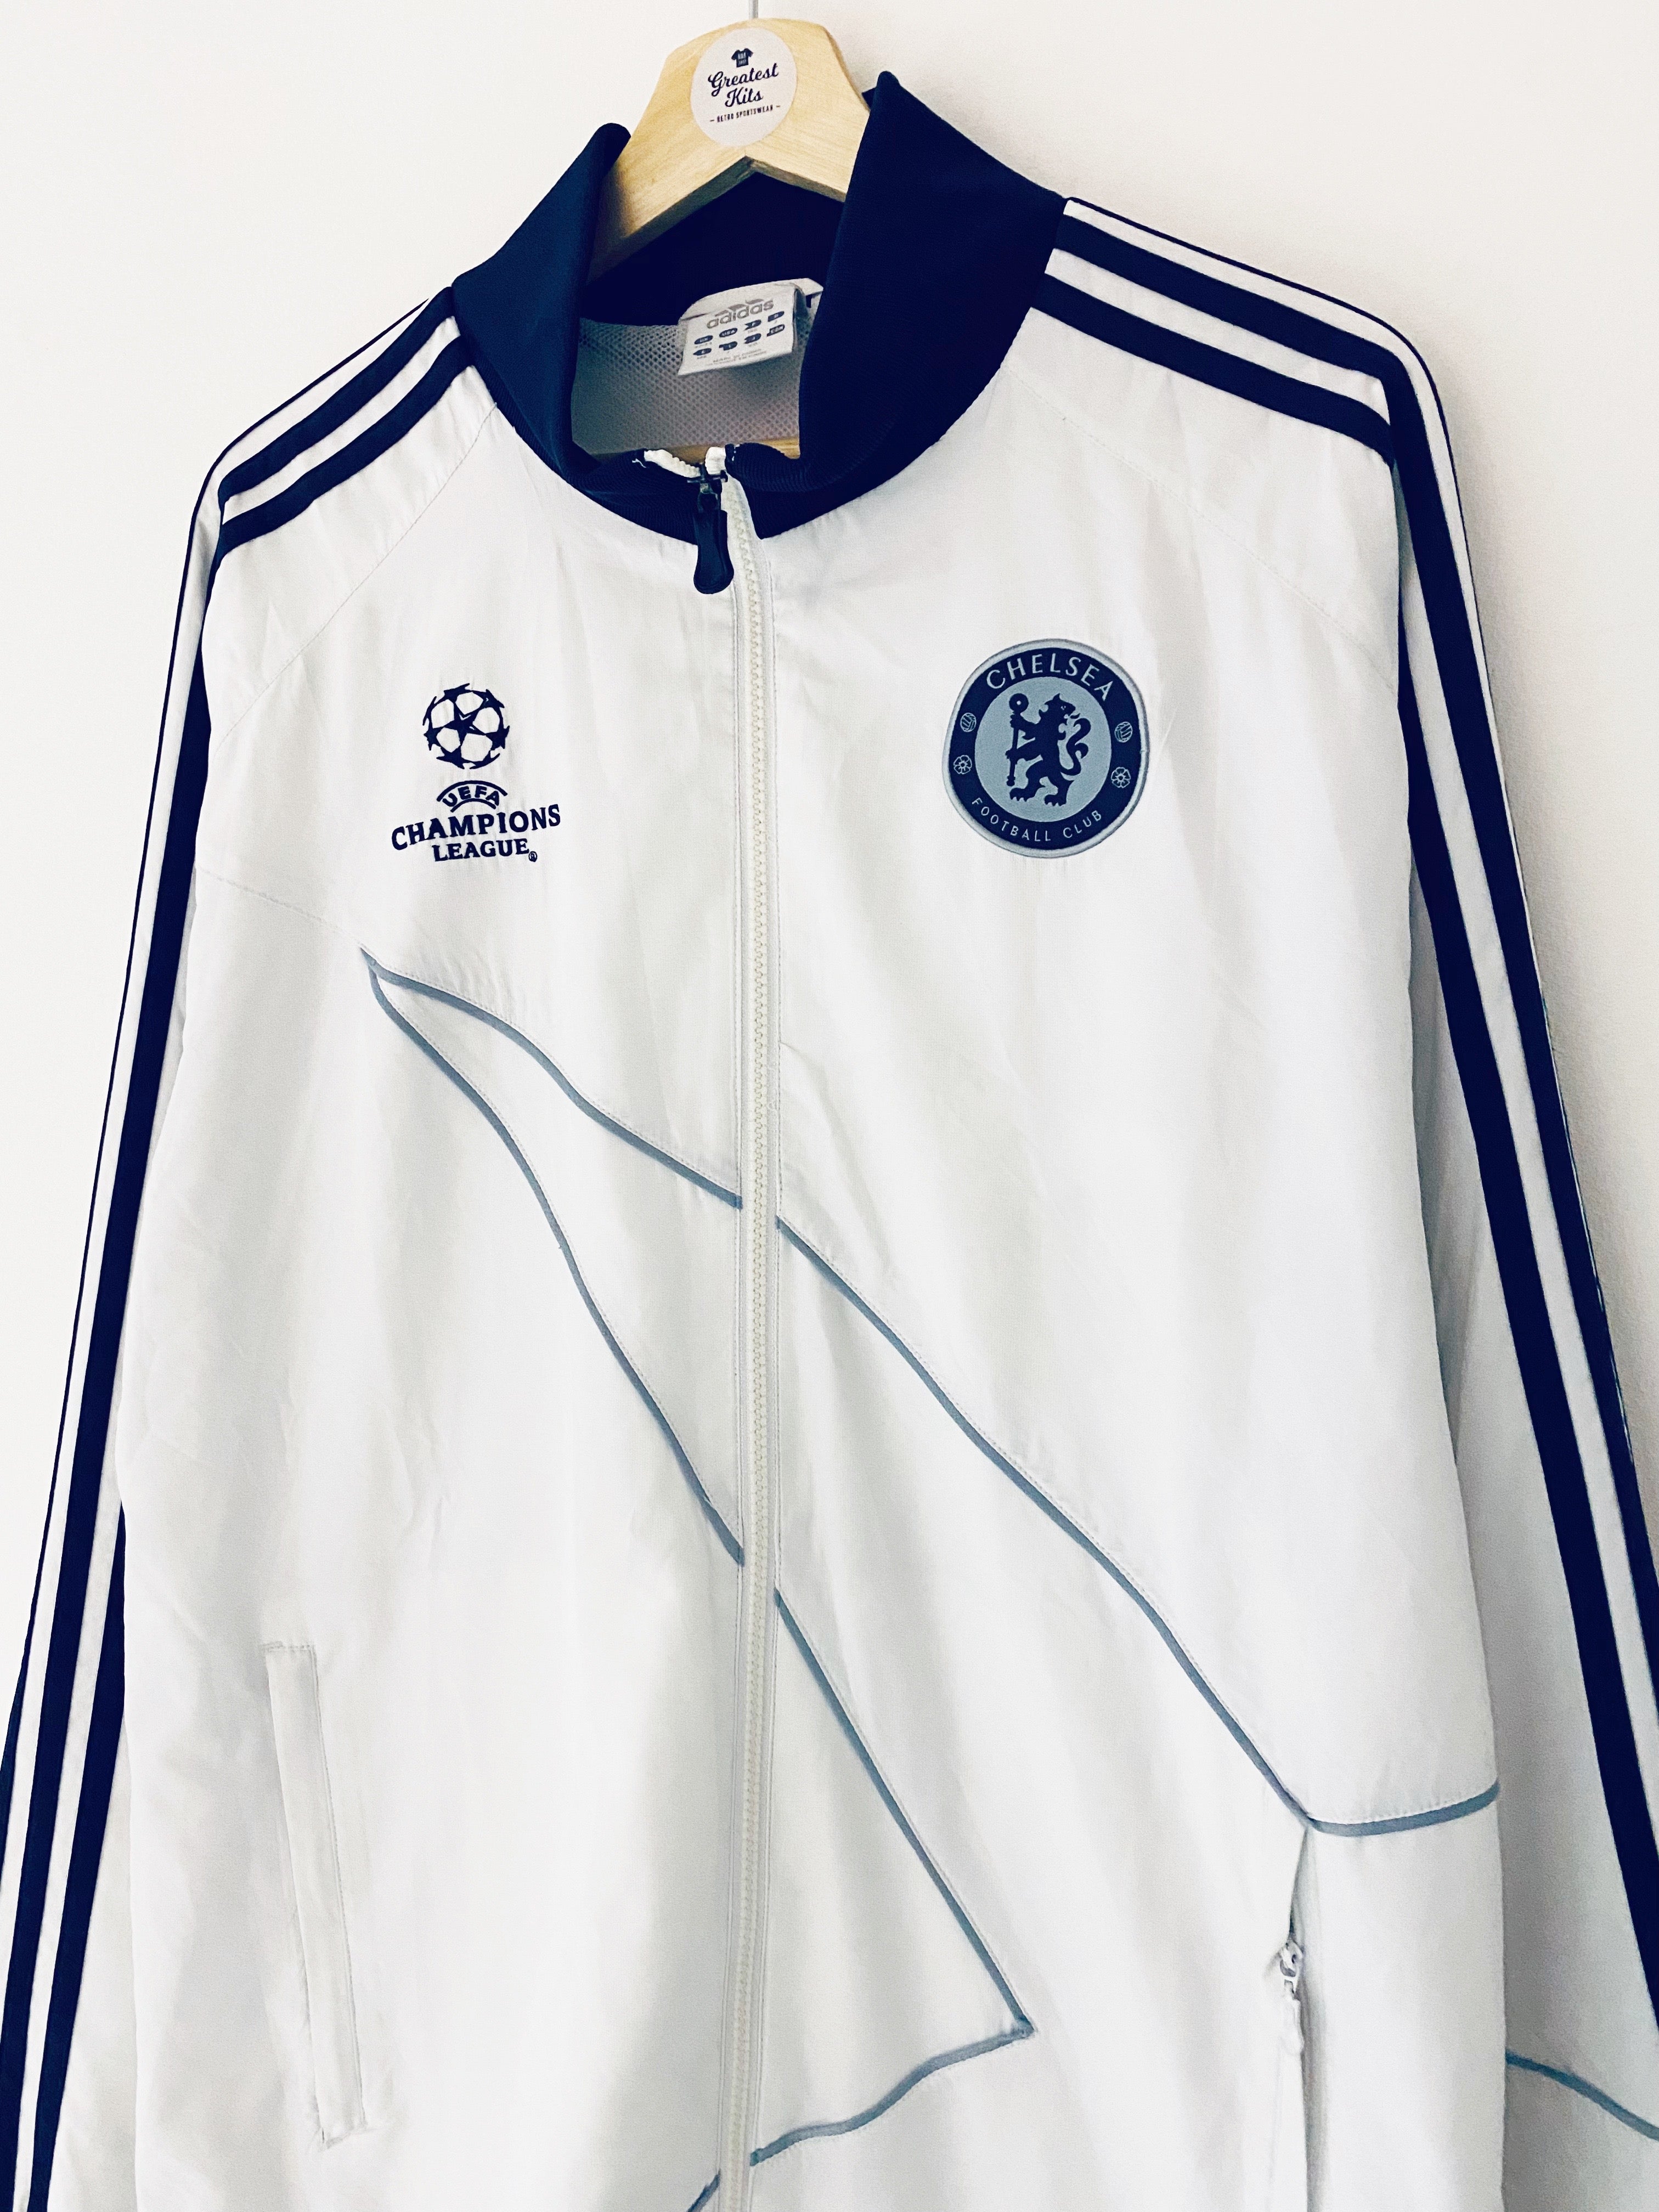 2009/10 Chelsea Champions League Training Jacket (L) 9/10